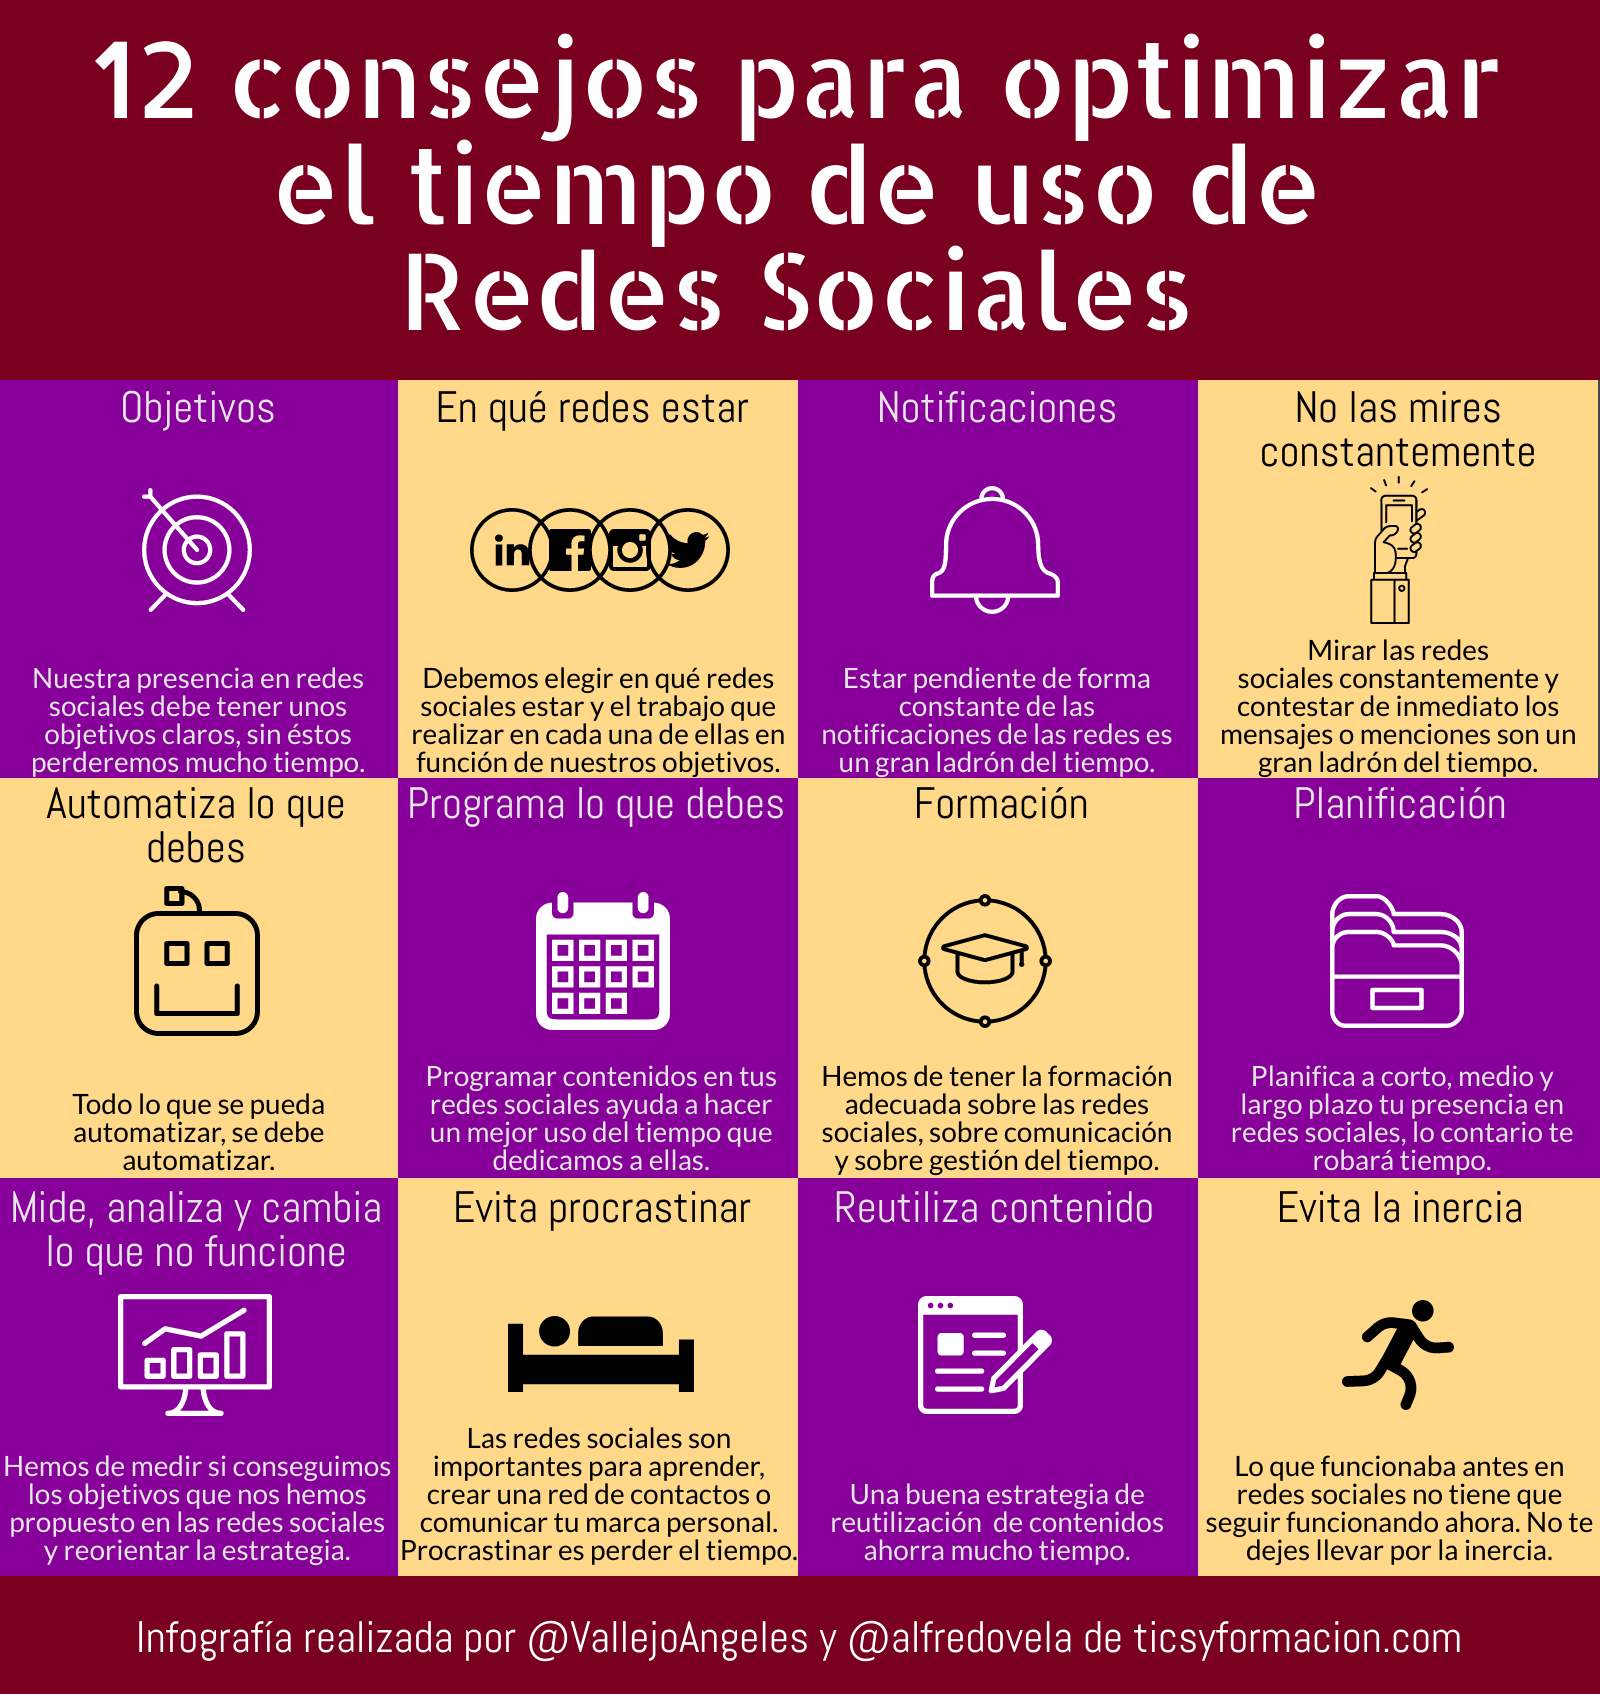 12 consejos para optimizar el tiempo de uso de Redes Sociales #infografia #SocialMedia #GestióndelTiempo